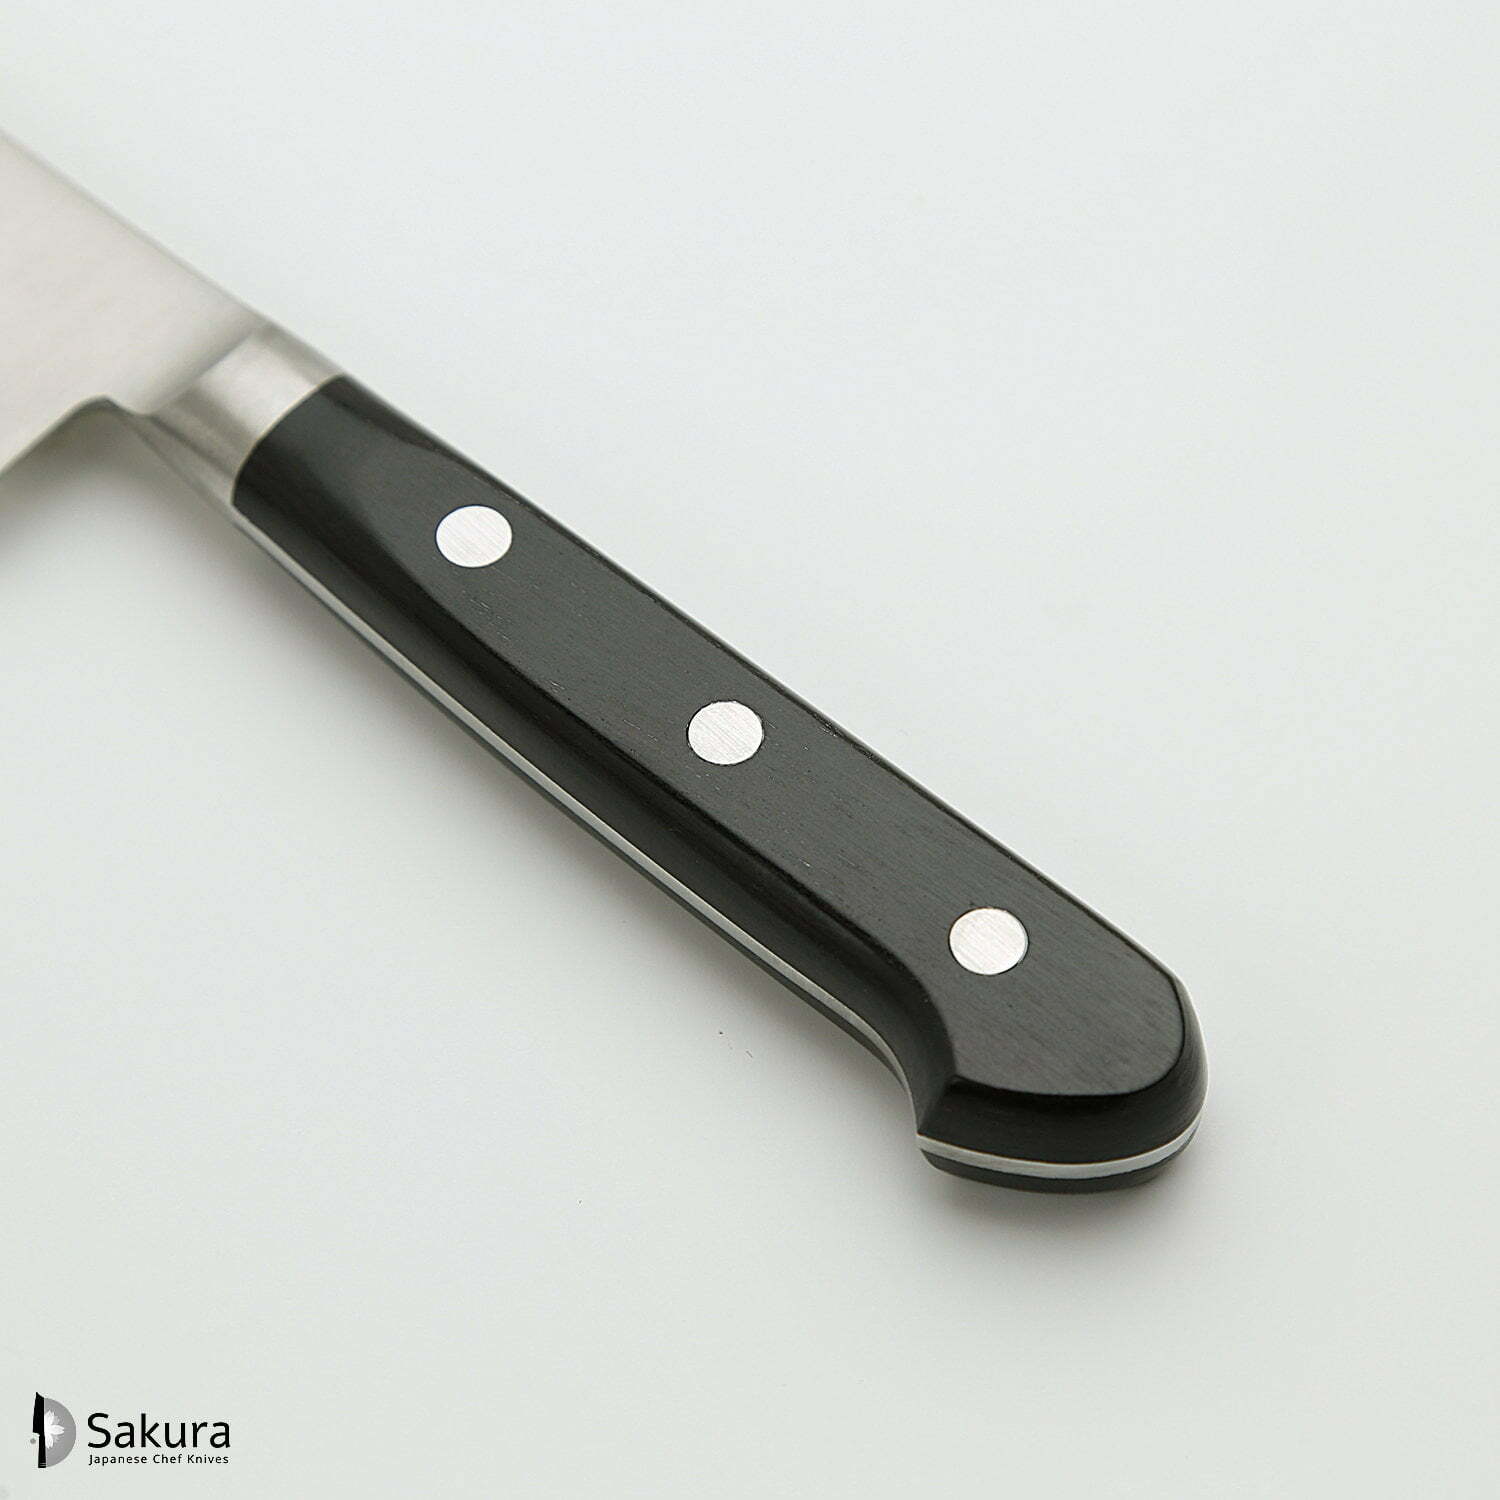 סכין עזר קטנה רב-תכליתית פֶּטִי 150מ״מ מחוזקת 3 שכבות: פלדת פחמן יפנית מתקדמת מסוג R2/SG2 עטופה פלדת אל-חלד גימור מבריק ג׳יקו סאקאיי יפן